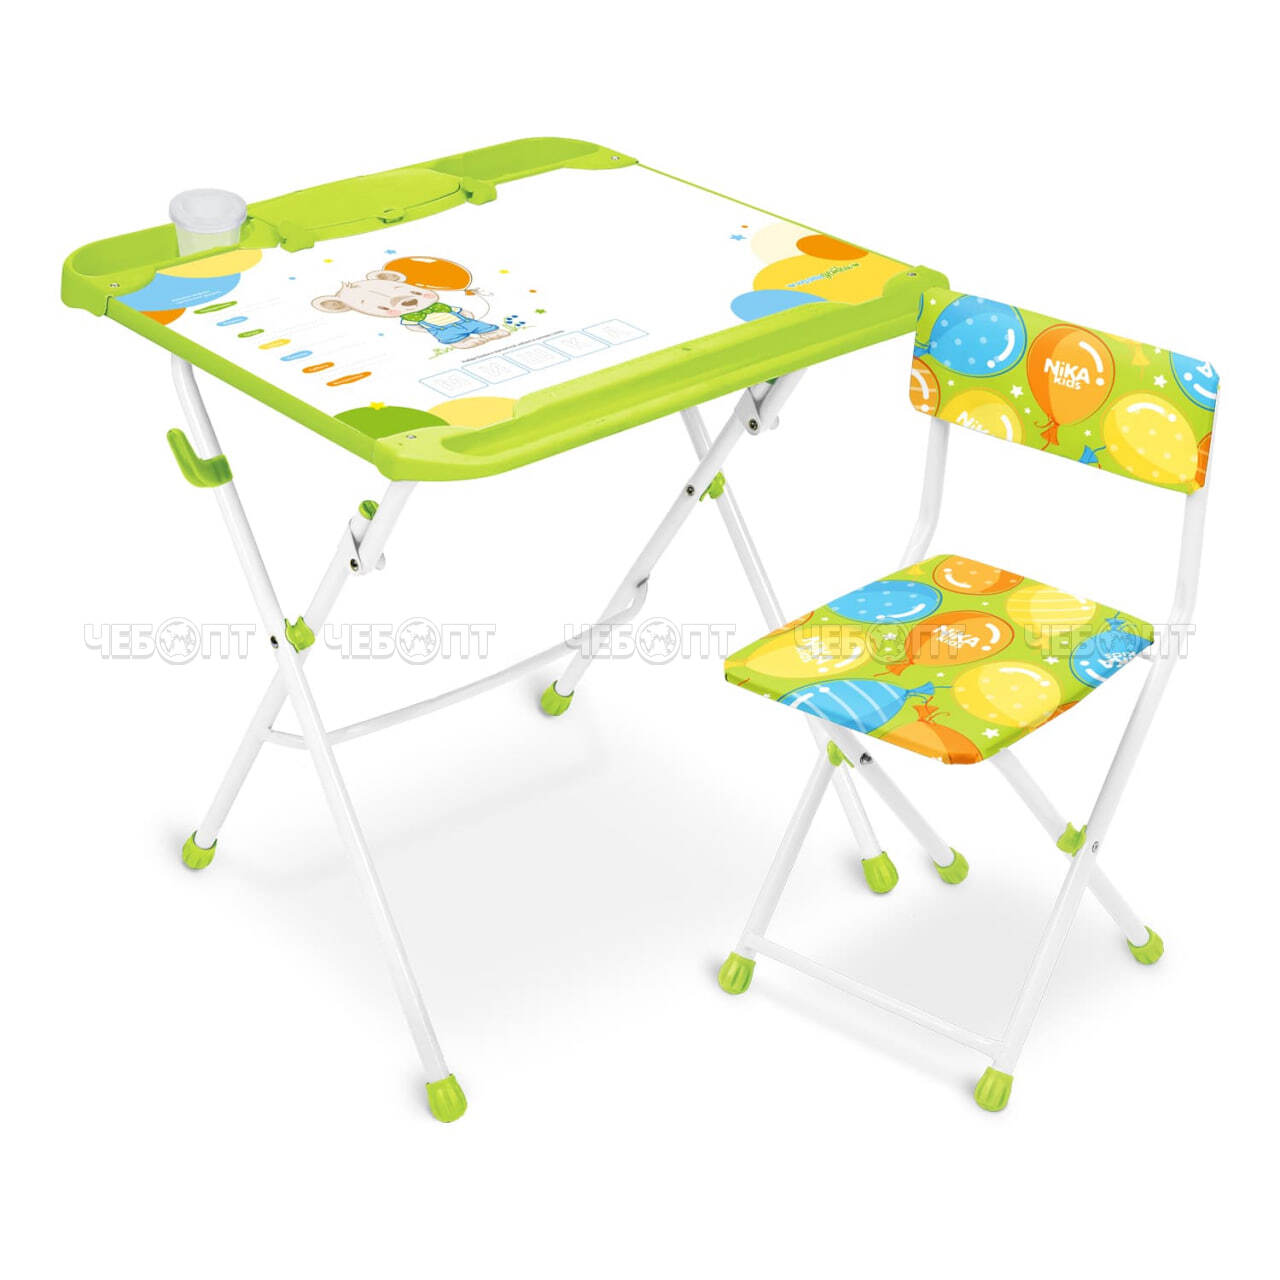 Комплект детской мебели "НАШИ ДЕТКИ" 3в1: стол-парта + мольберт + стул (магн. мозаика и азбука, пенал, стакан) возраст 3-7 арт. КНД5 [1] NIKA. 5 ЧЕБОПТ.